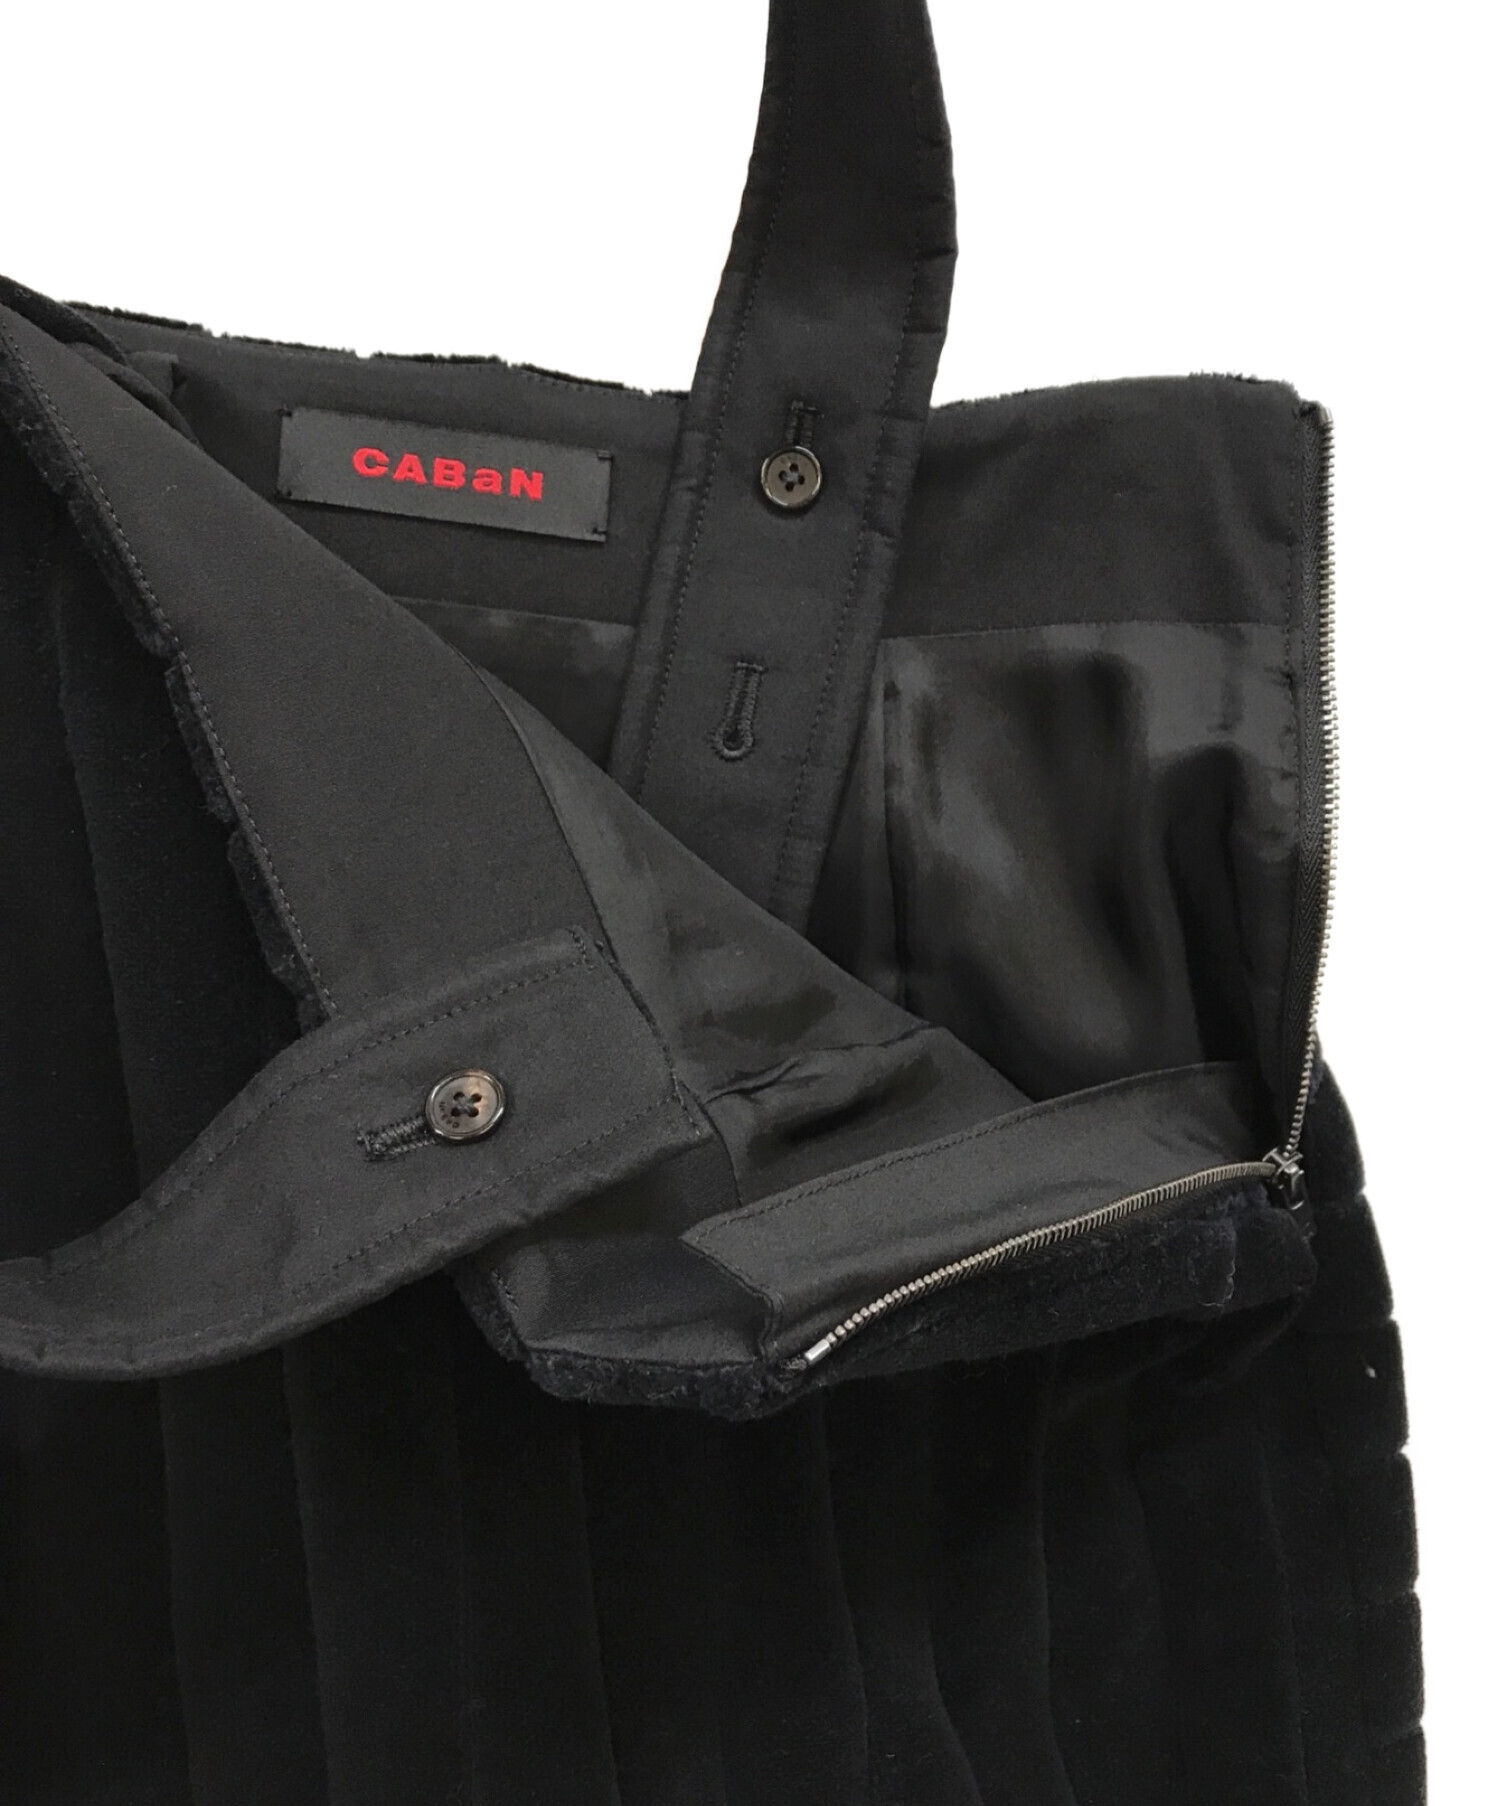 CABAN (キャバン) マキシコーデュロイ サスペンダーロングスカート ブラック サイズ:XS